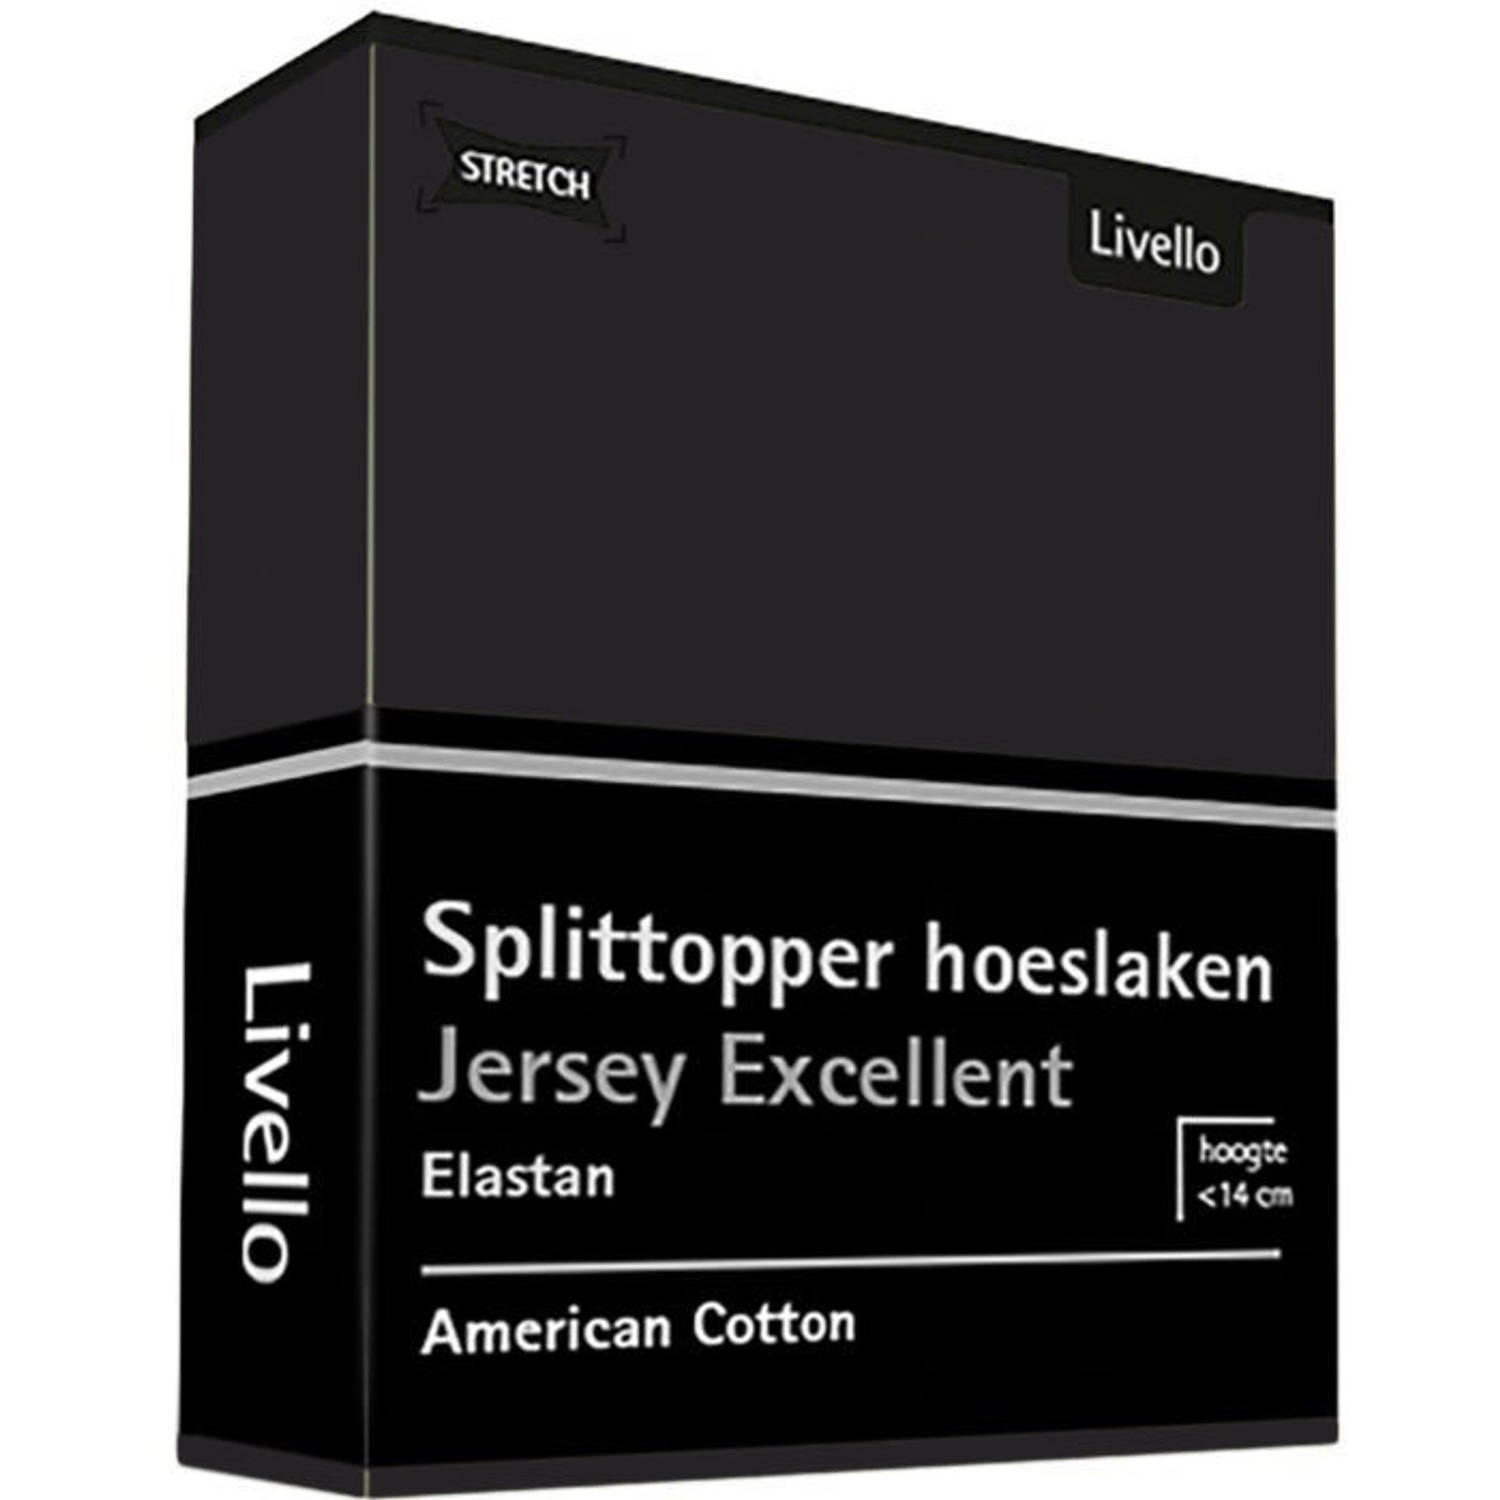 Livello Hoeslaken Splittopper Jersey Excellent Black 250 gr 140x200 t/m 160x220